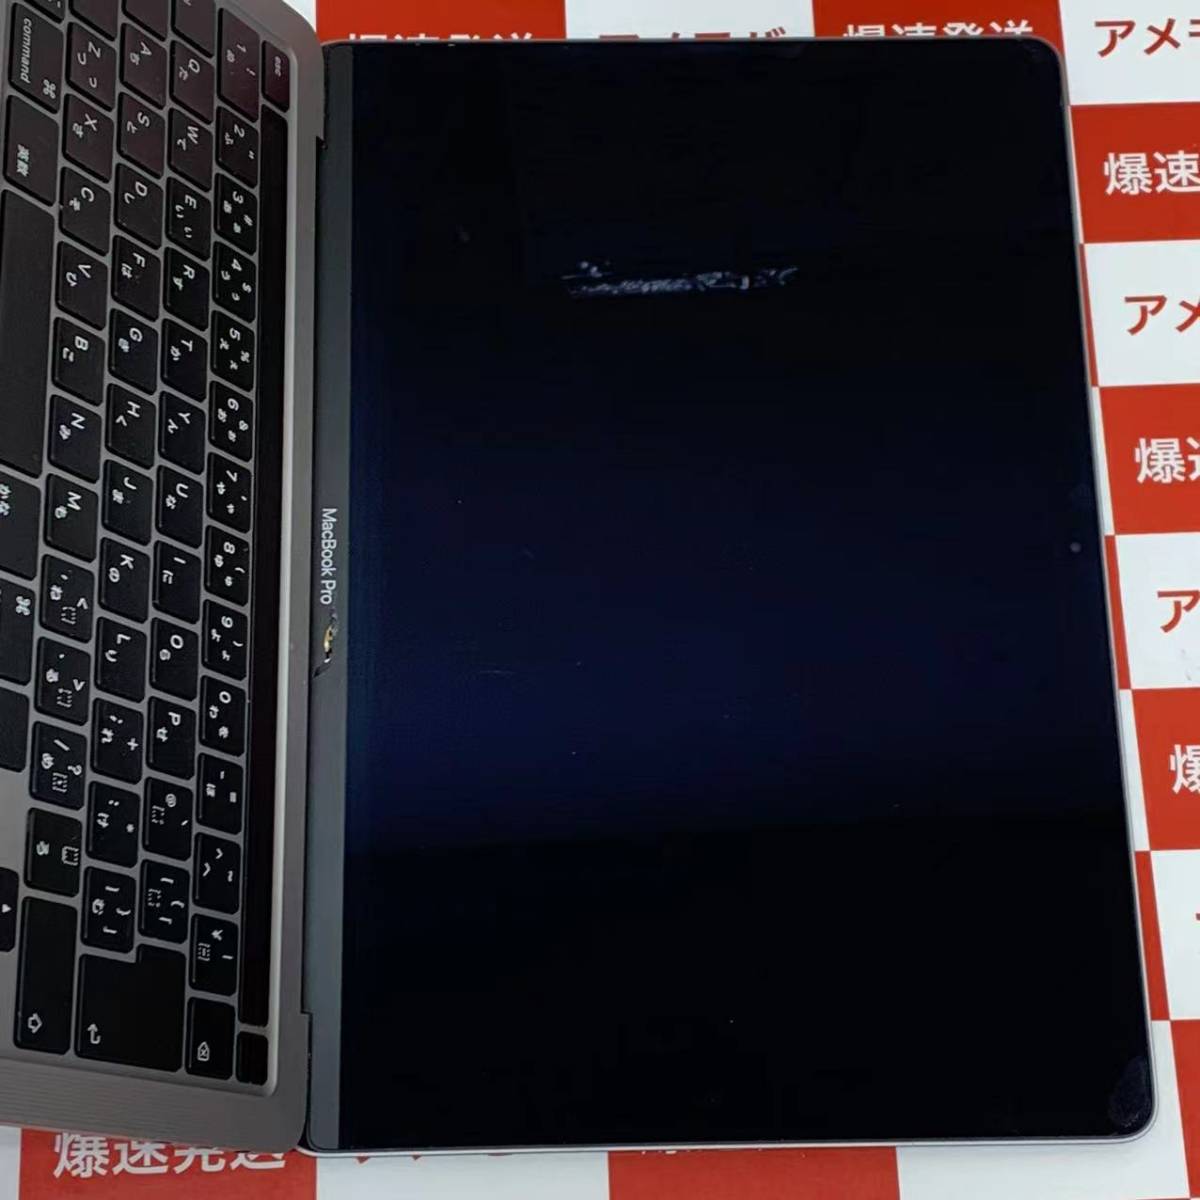 ジャンク品・液晶破損】M1 MacBook Air 16GB 13インチ-